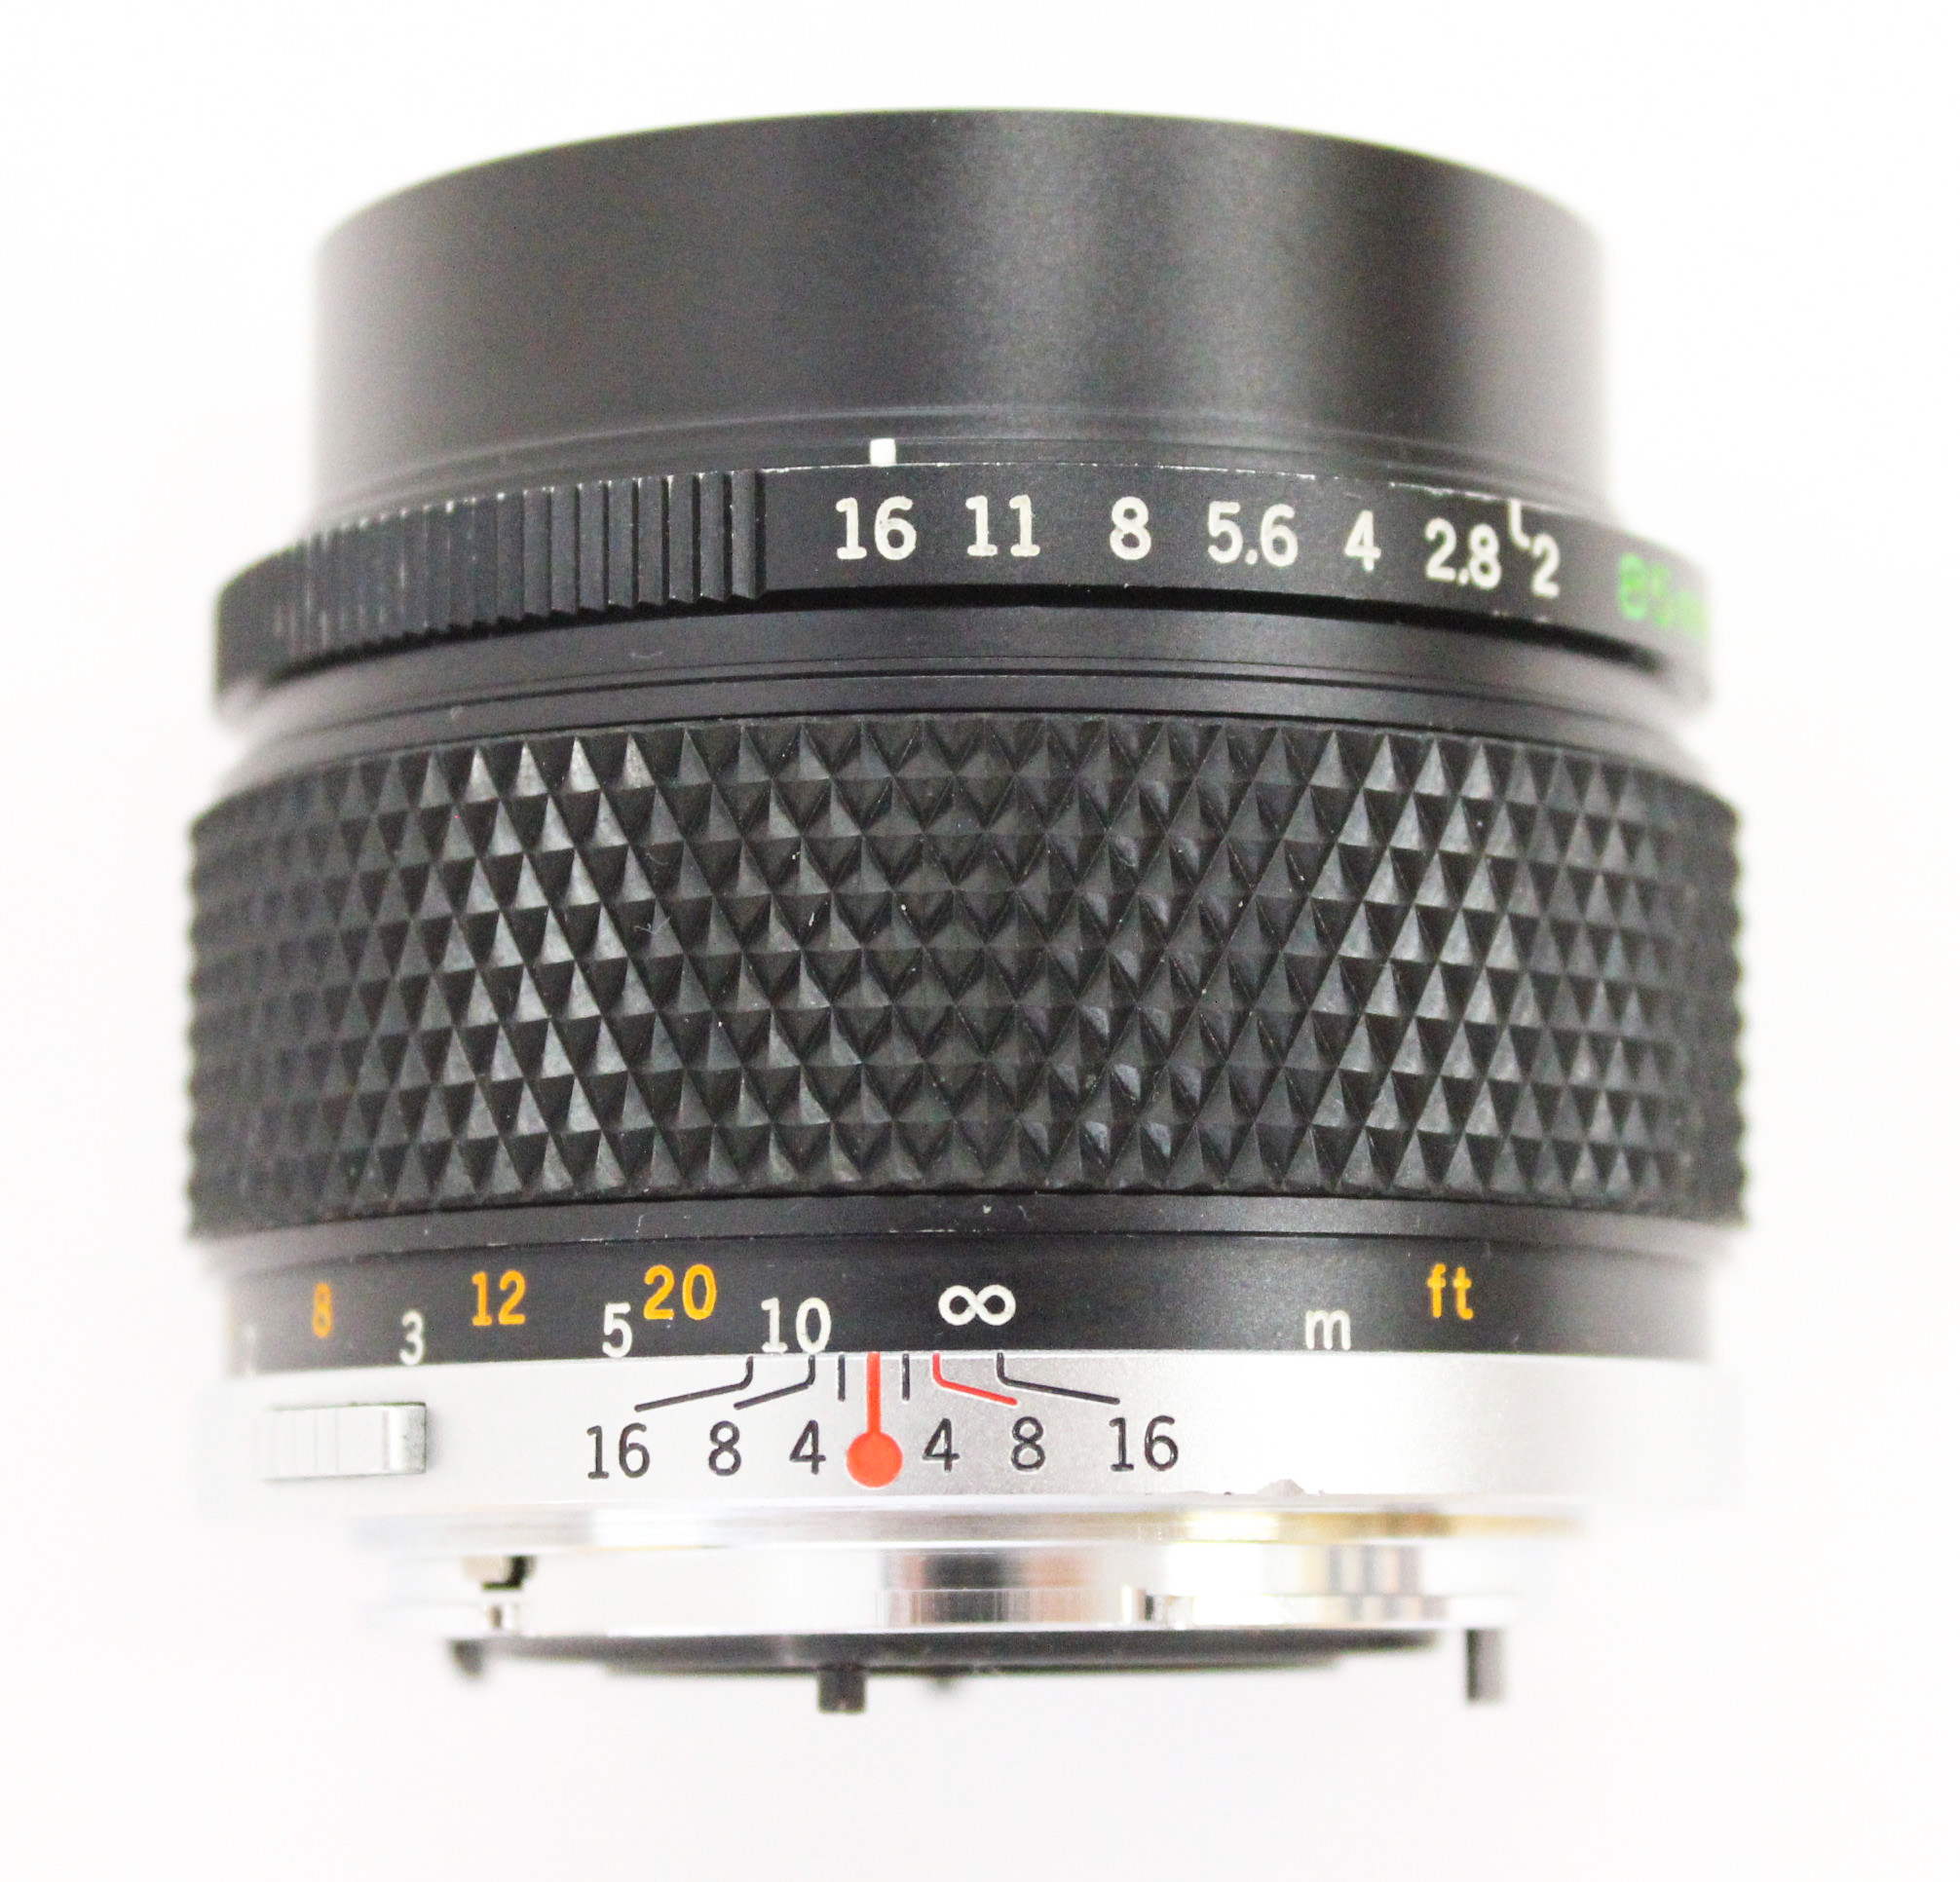 Olympus OM-System Zuiko Auto-T 85mm F/2 MF Lens from Japan (C1388) | Big  Fish J-Camera (Big Fish J-Shop)